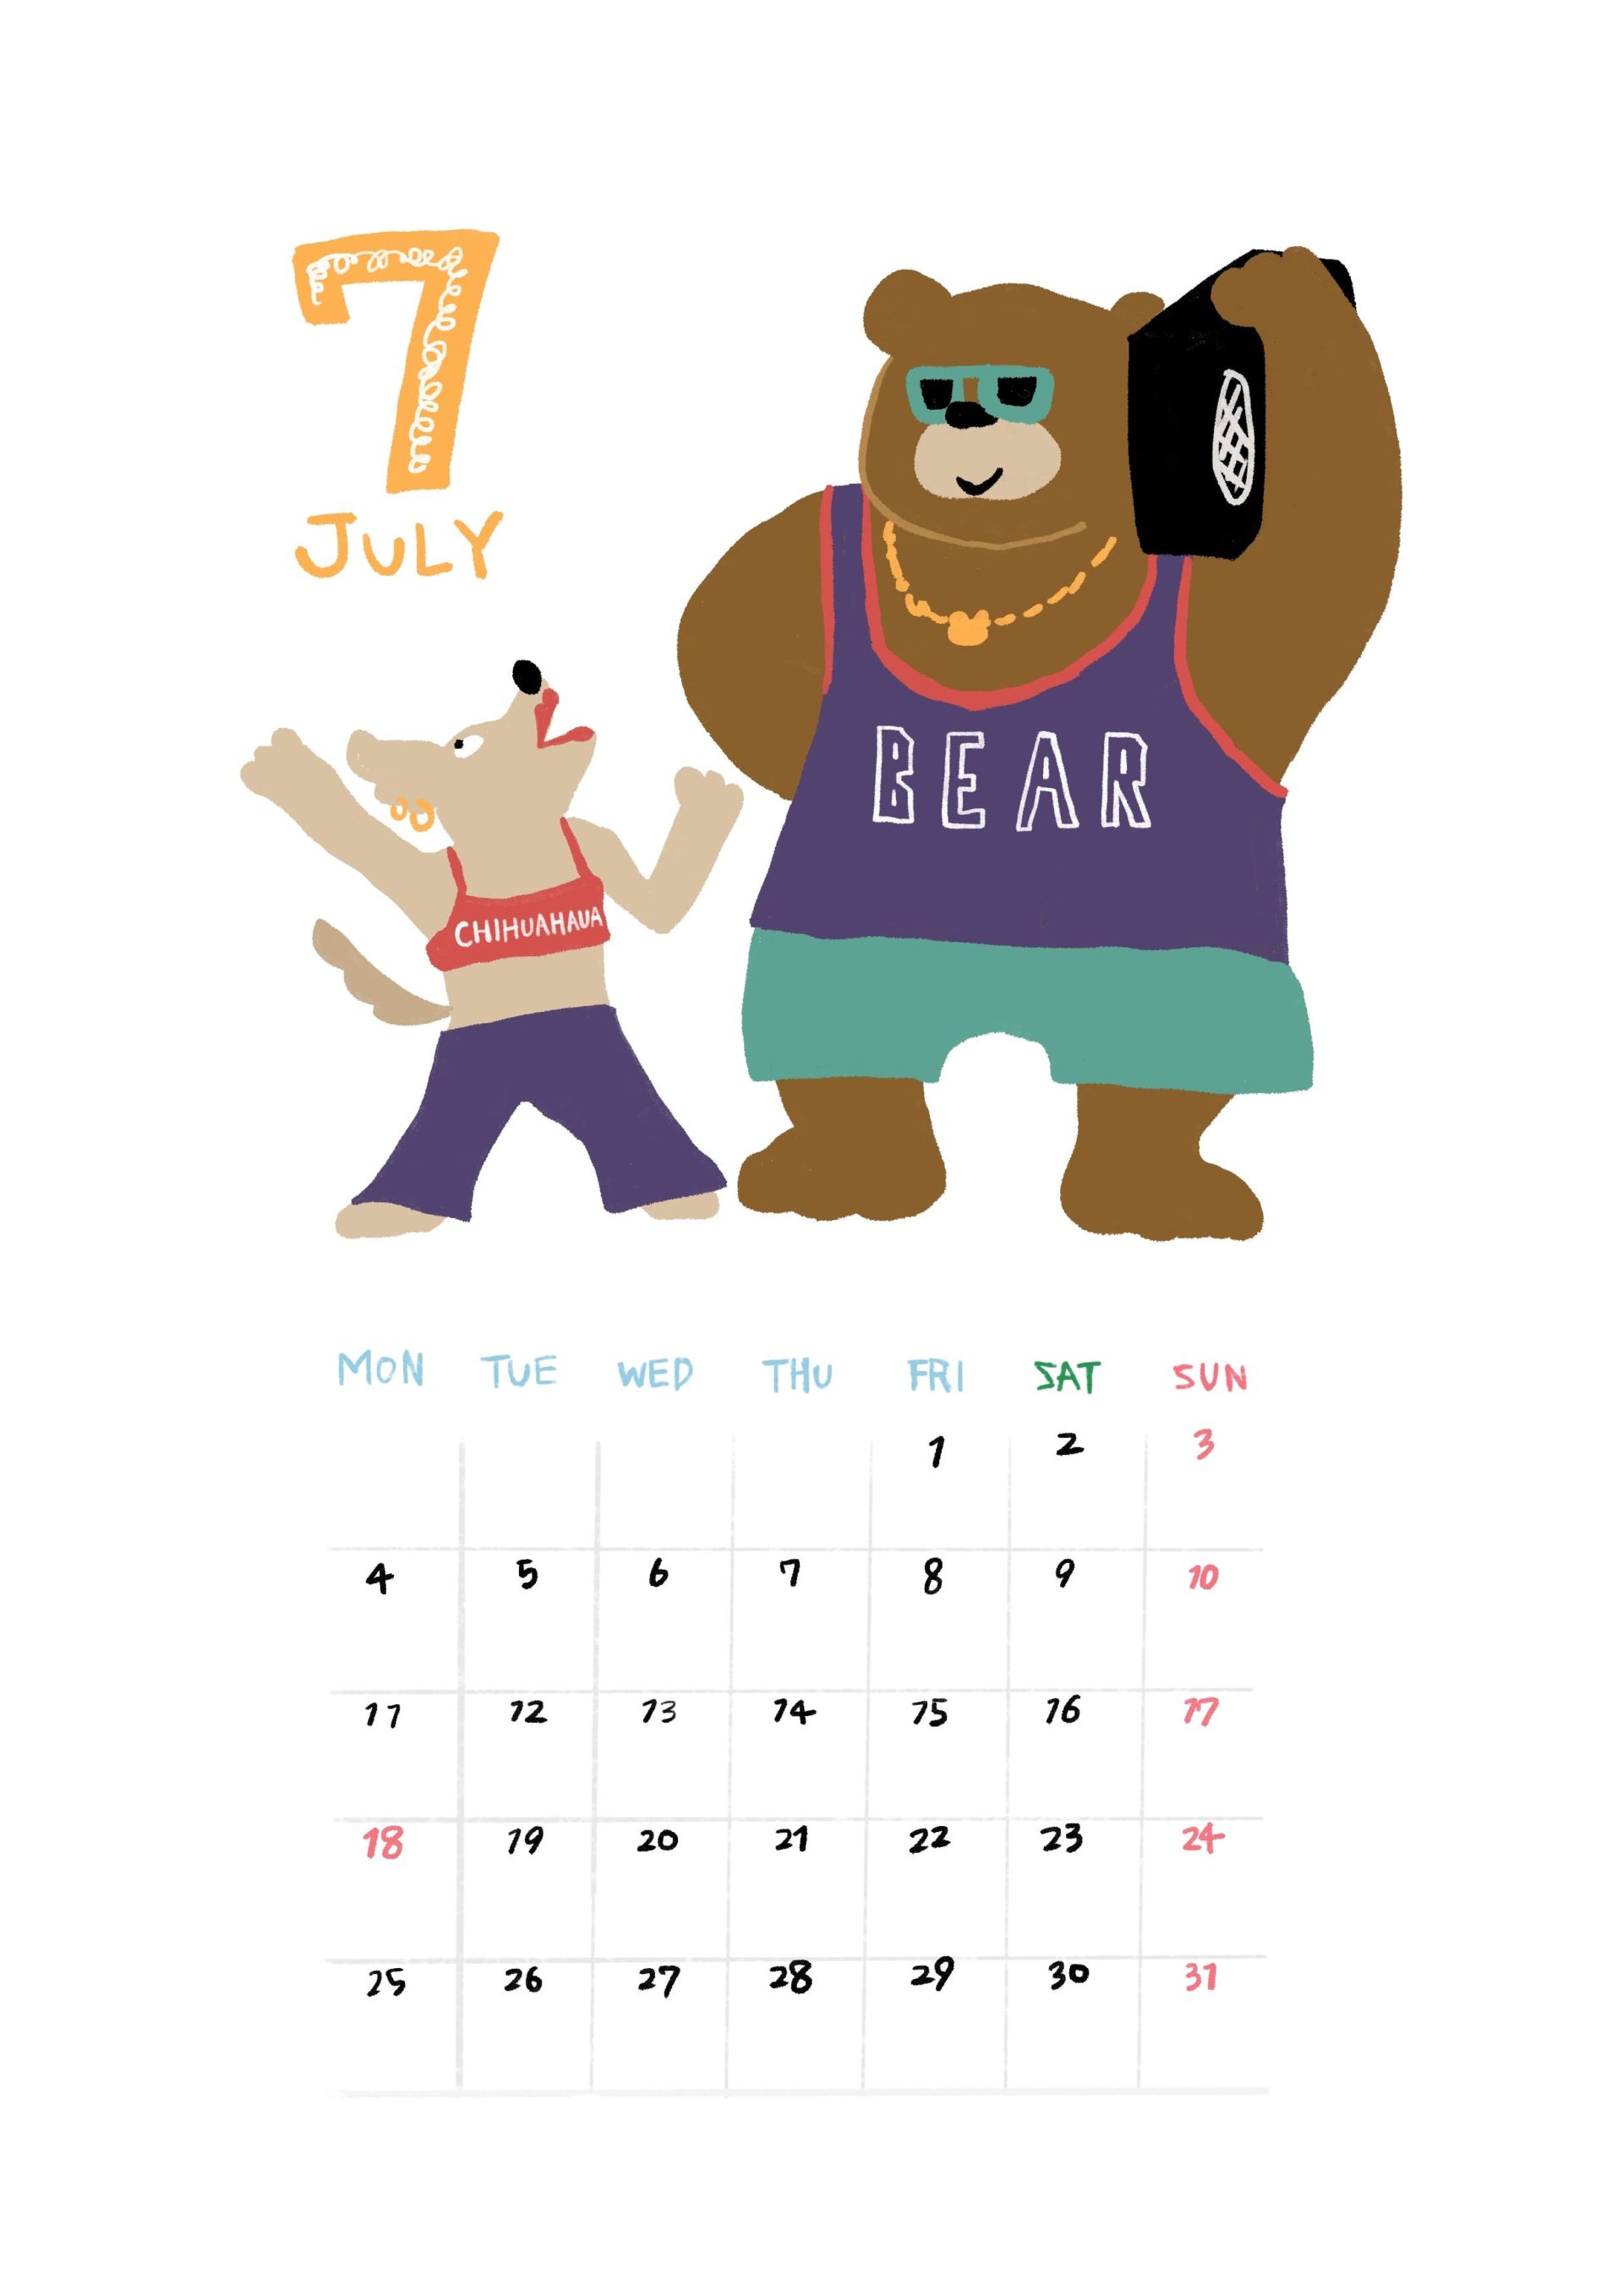 クマとチワワがノリノリなイラストの2022年7月カレンダー Illustration by ONATSU